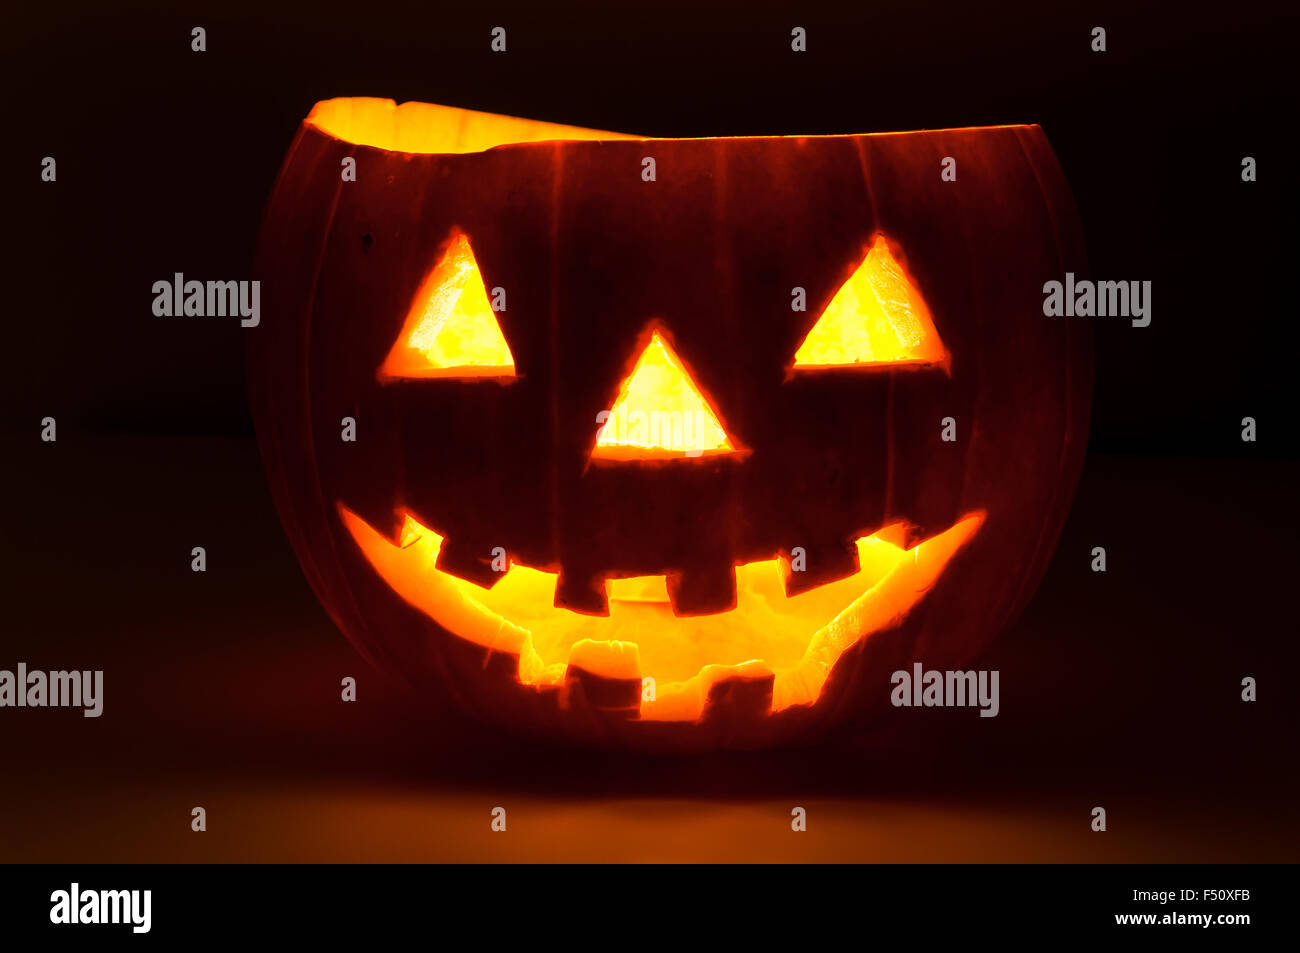 Lustige Halloween-Kürbis im Dunkeln leuchtend Stockfoto